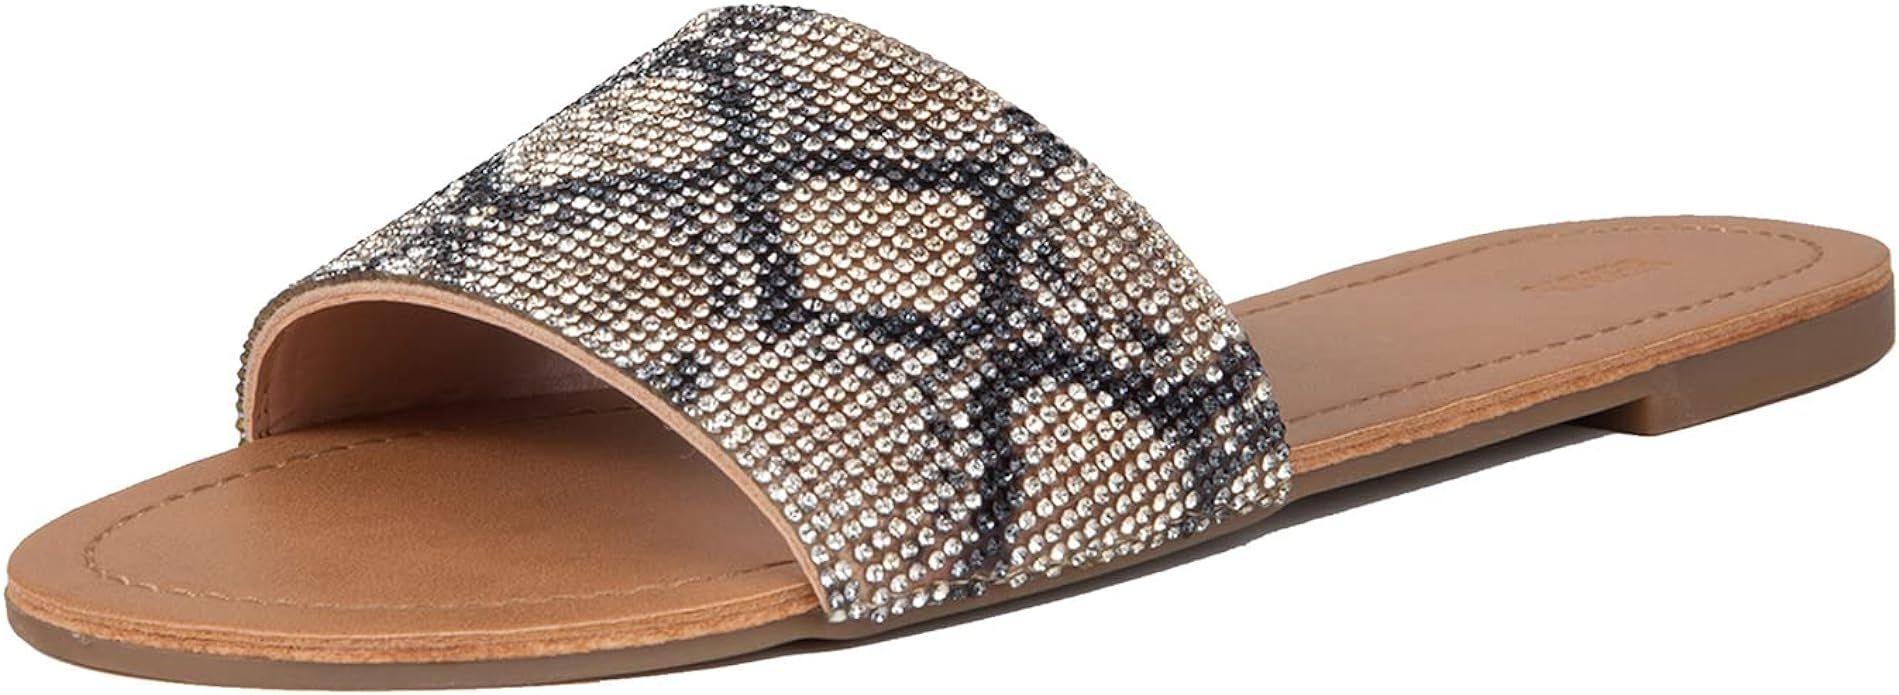 REDTOP Women's Slip on Sandals Slide Glitter Bling Casual Sandal Flat Open Toe Sparkle Slides | Amazon (US)